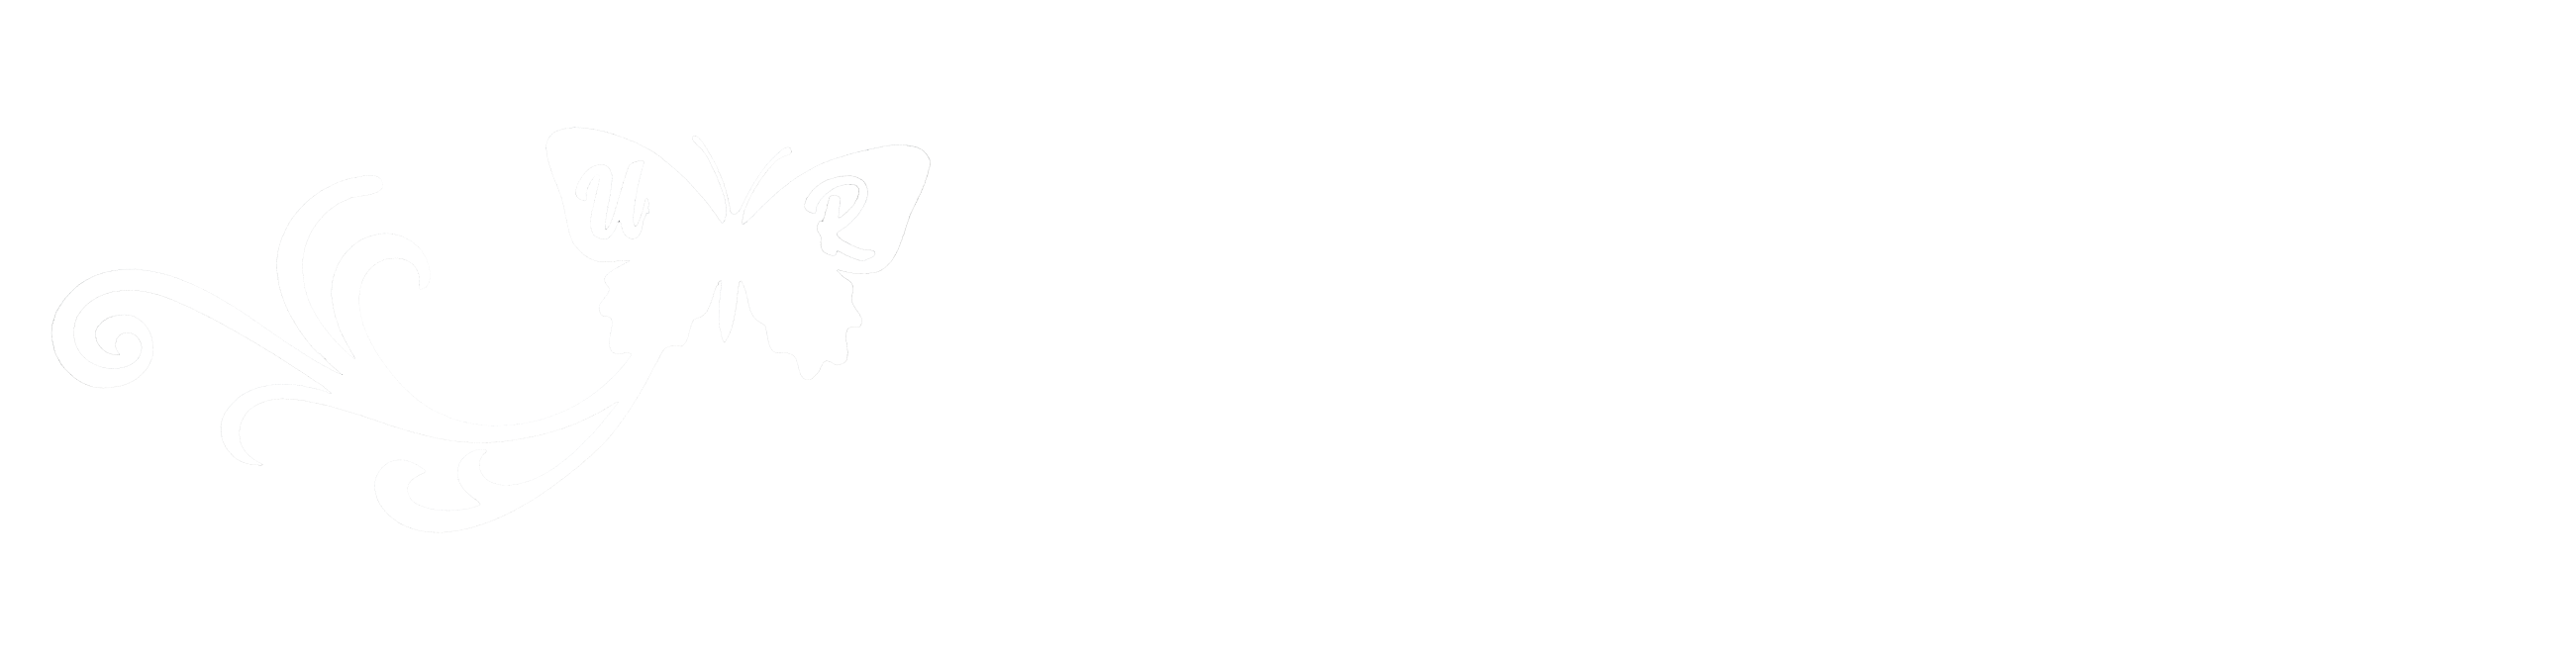 Gschenklädeli.ch